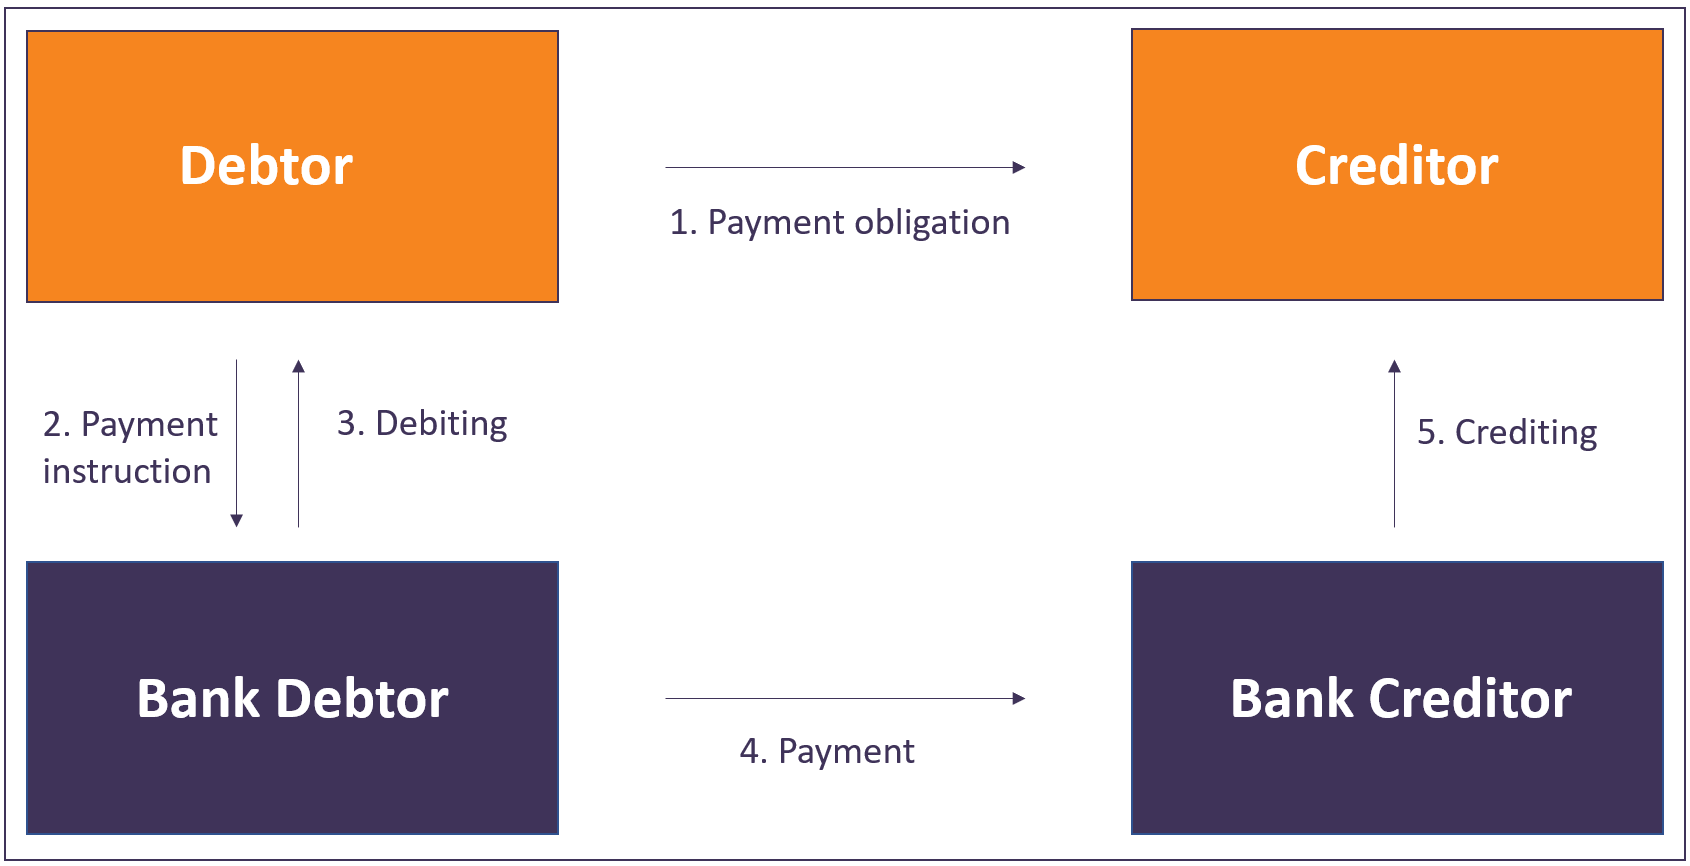 Debtor Bank Debtor Process SEPA